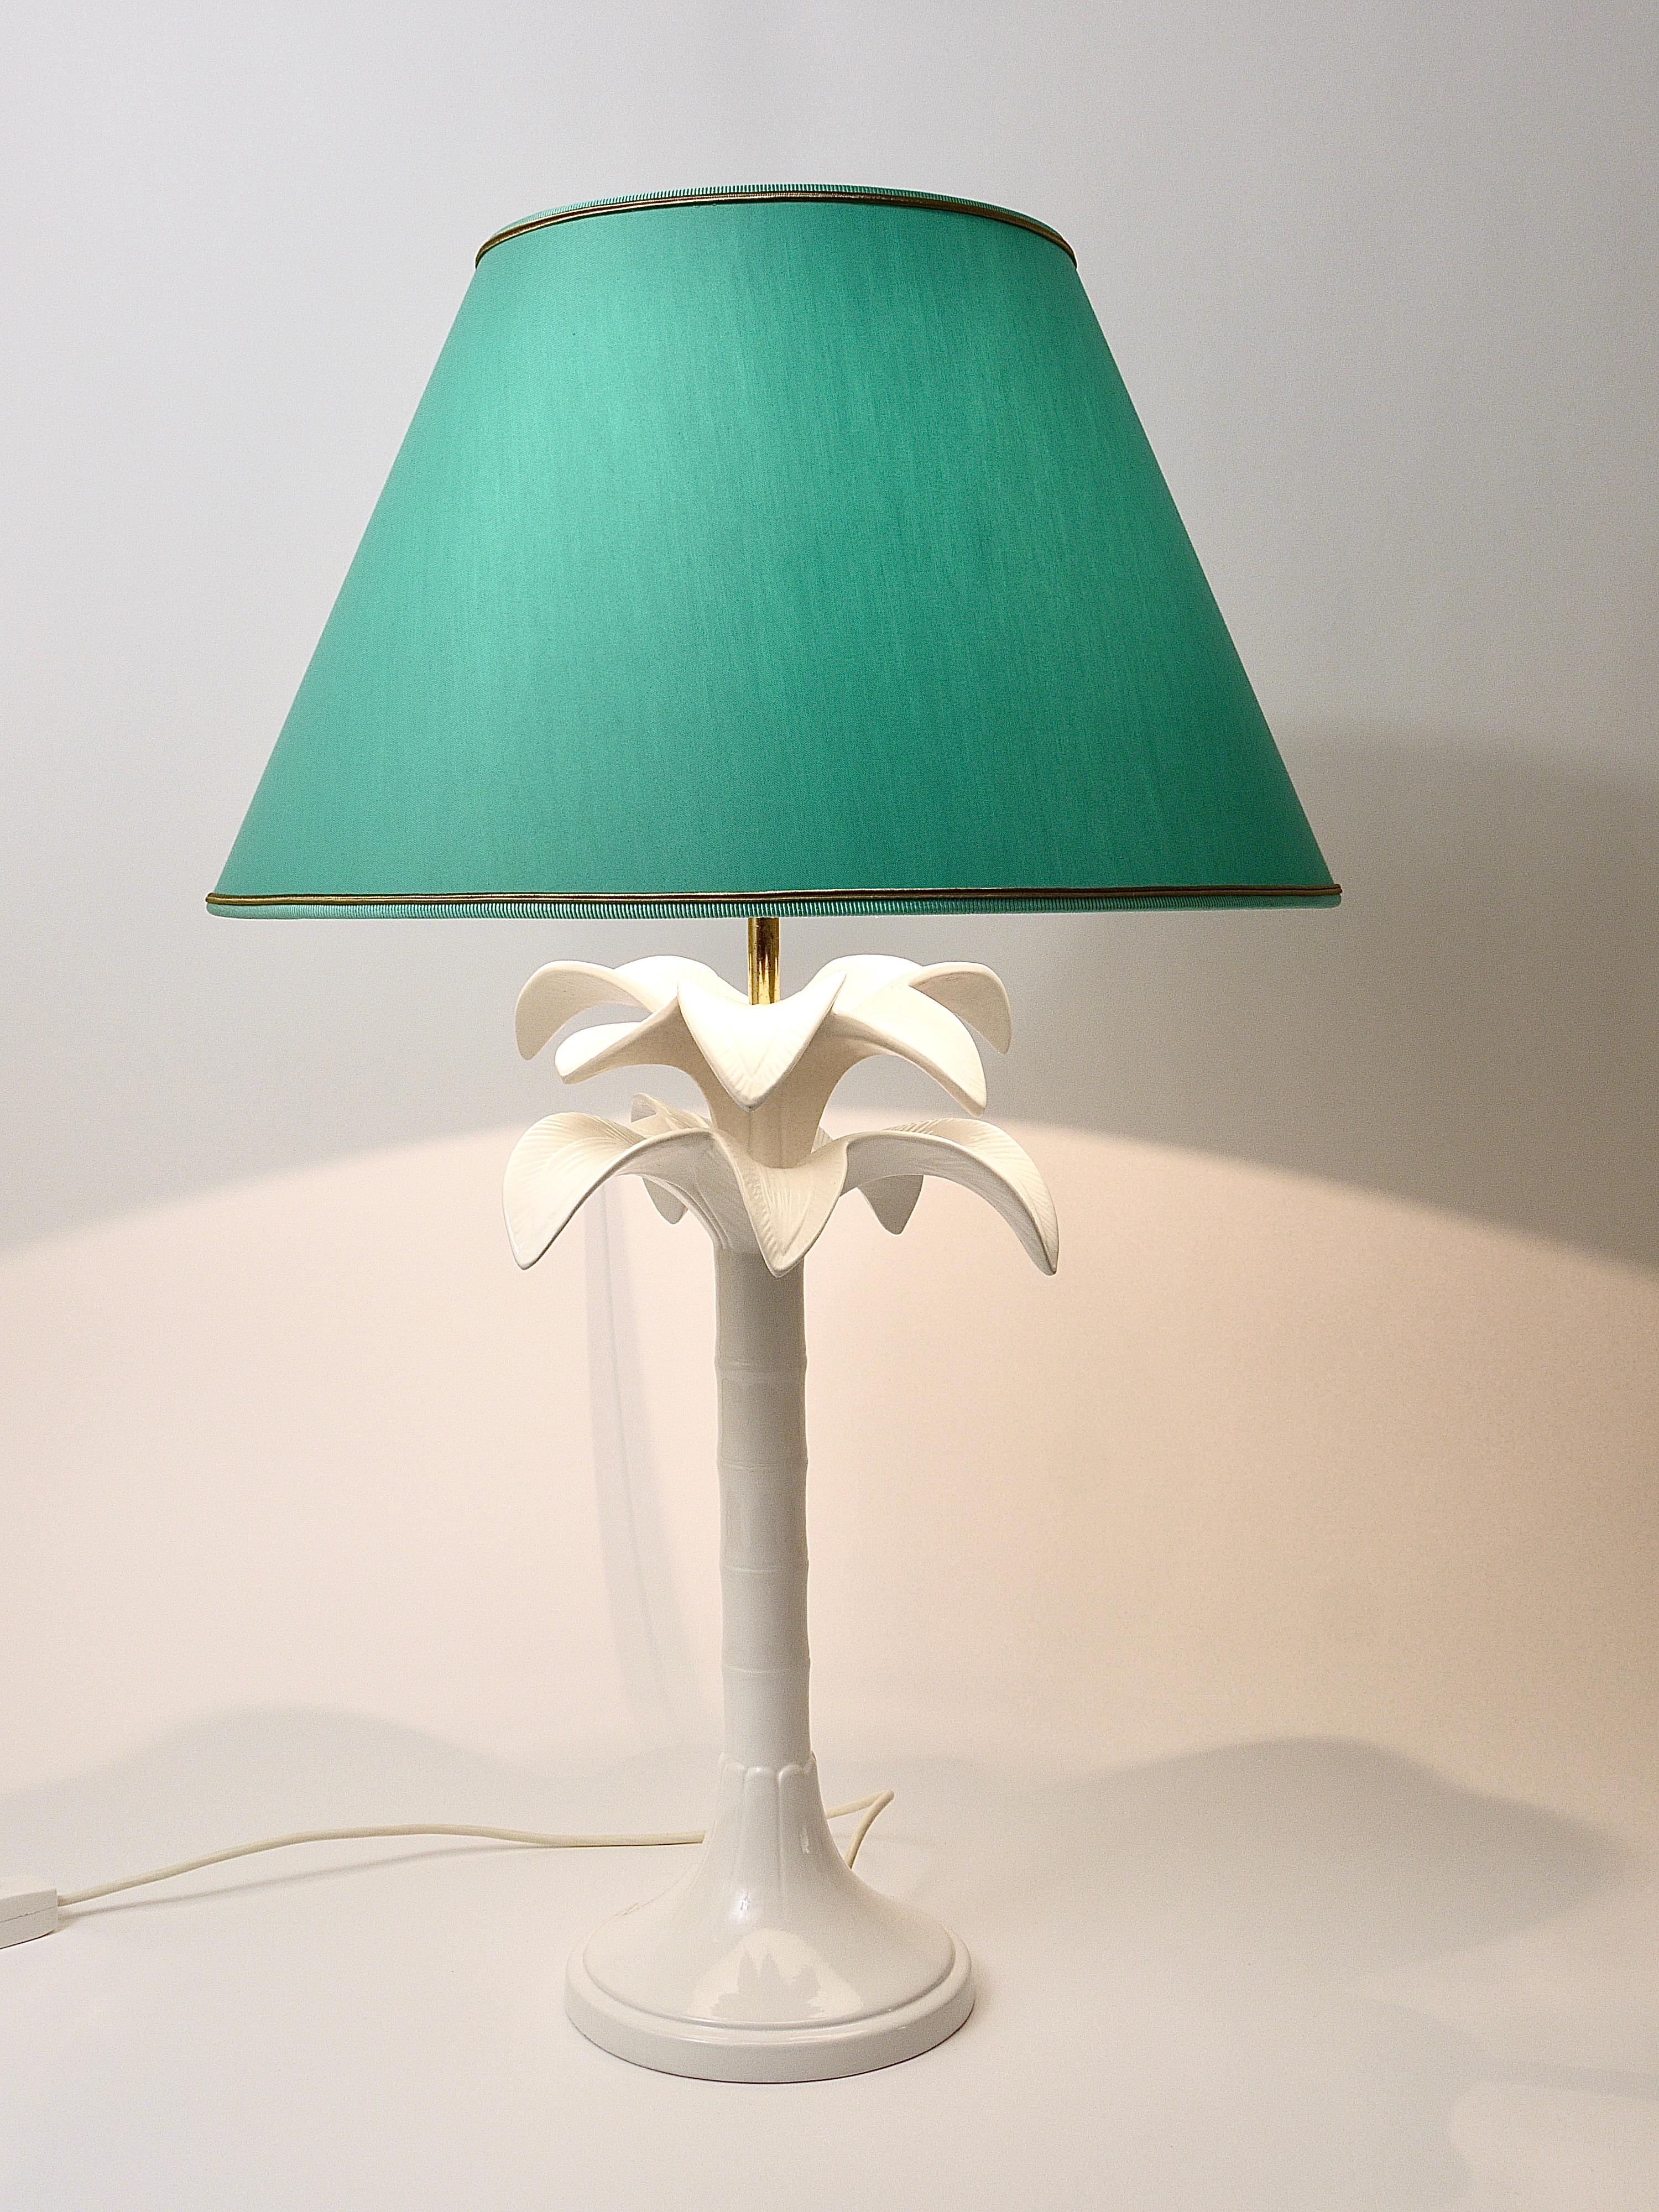 Belle et décorative lampe de table / lampe d'appoint en forme de palmier des années 1970, conçue par Tommasi Barbi, fabriquée en Italie. La base est en céramique émaillée blanche. La lampe est livrée avec un abat-jour remis à neuf en utilisant le